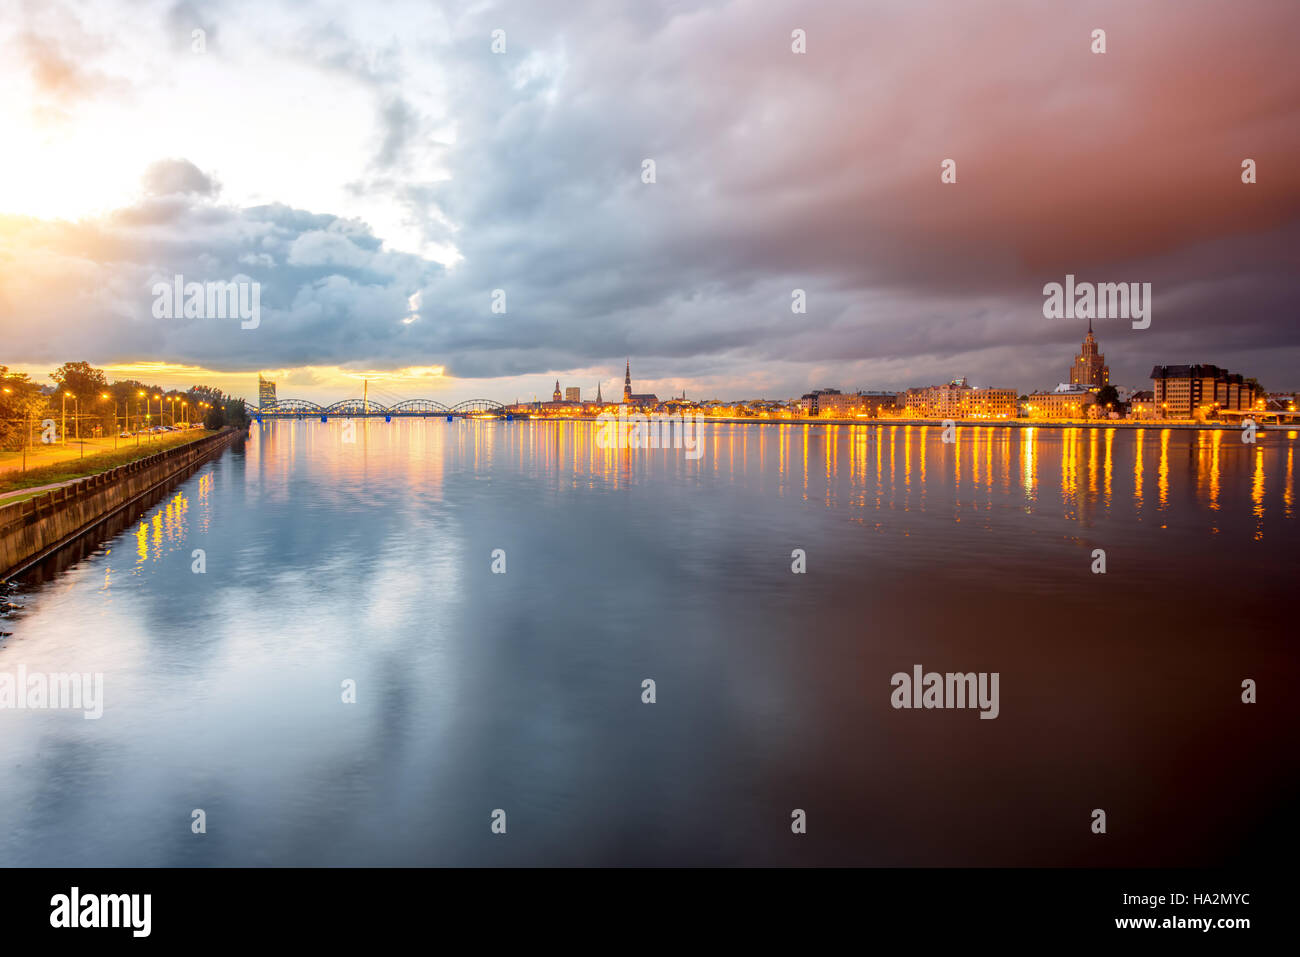 Riga cityscape night view Stock Photo